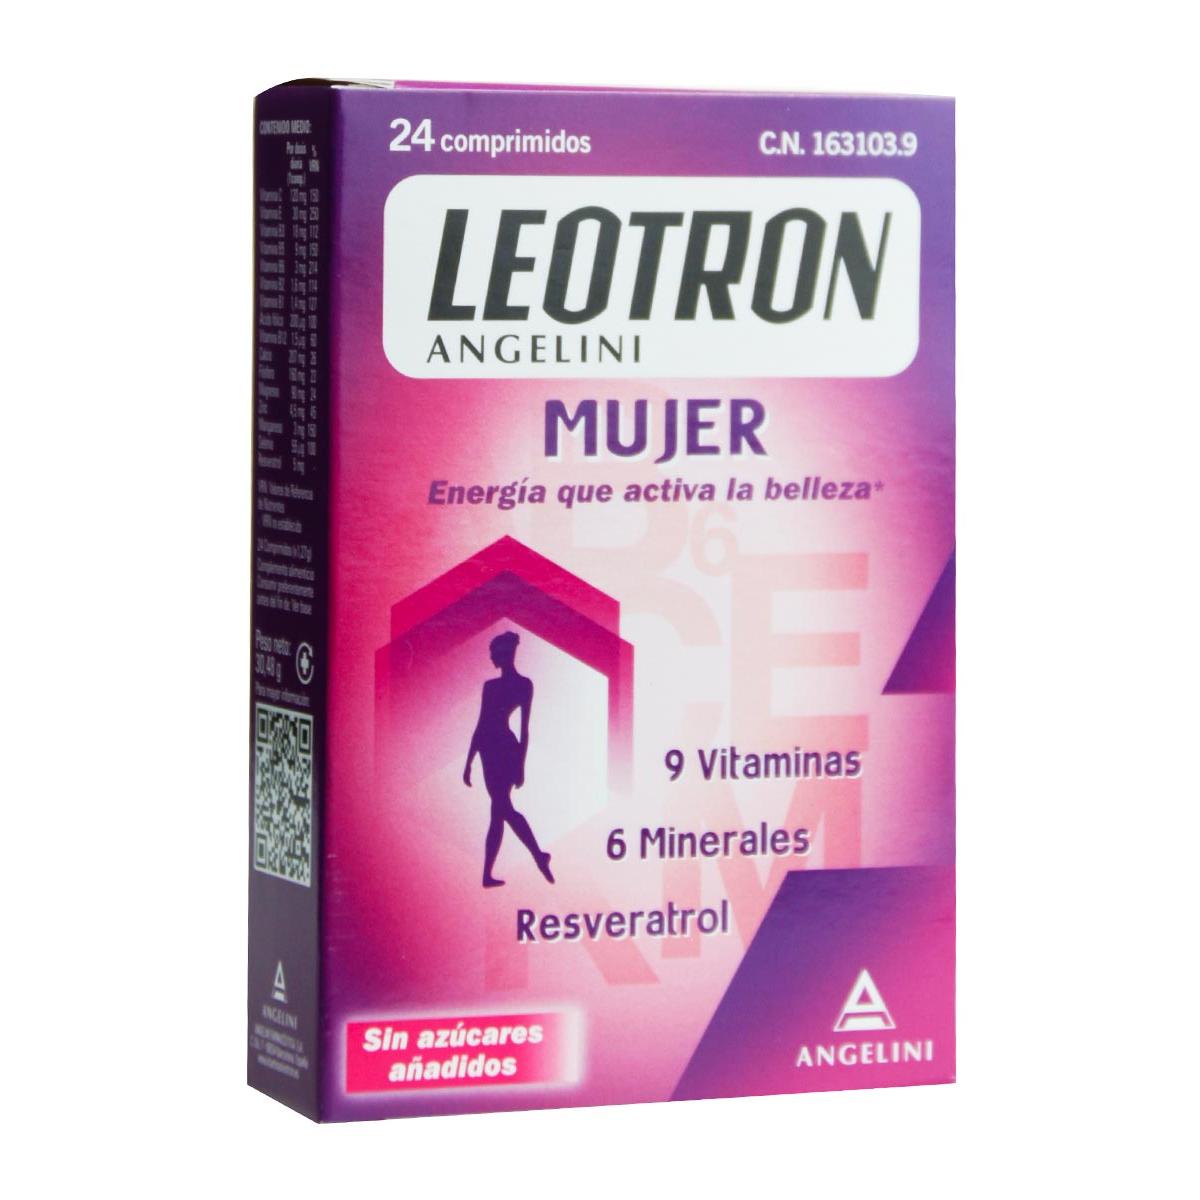 Leotron - Leotron mujer 24 comprimidos